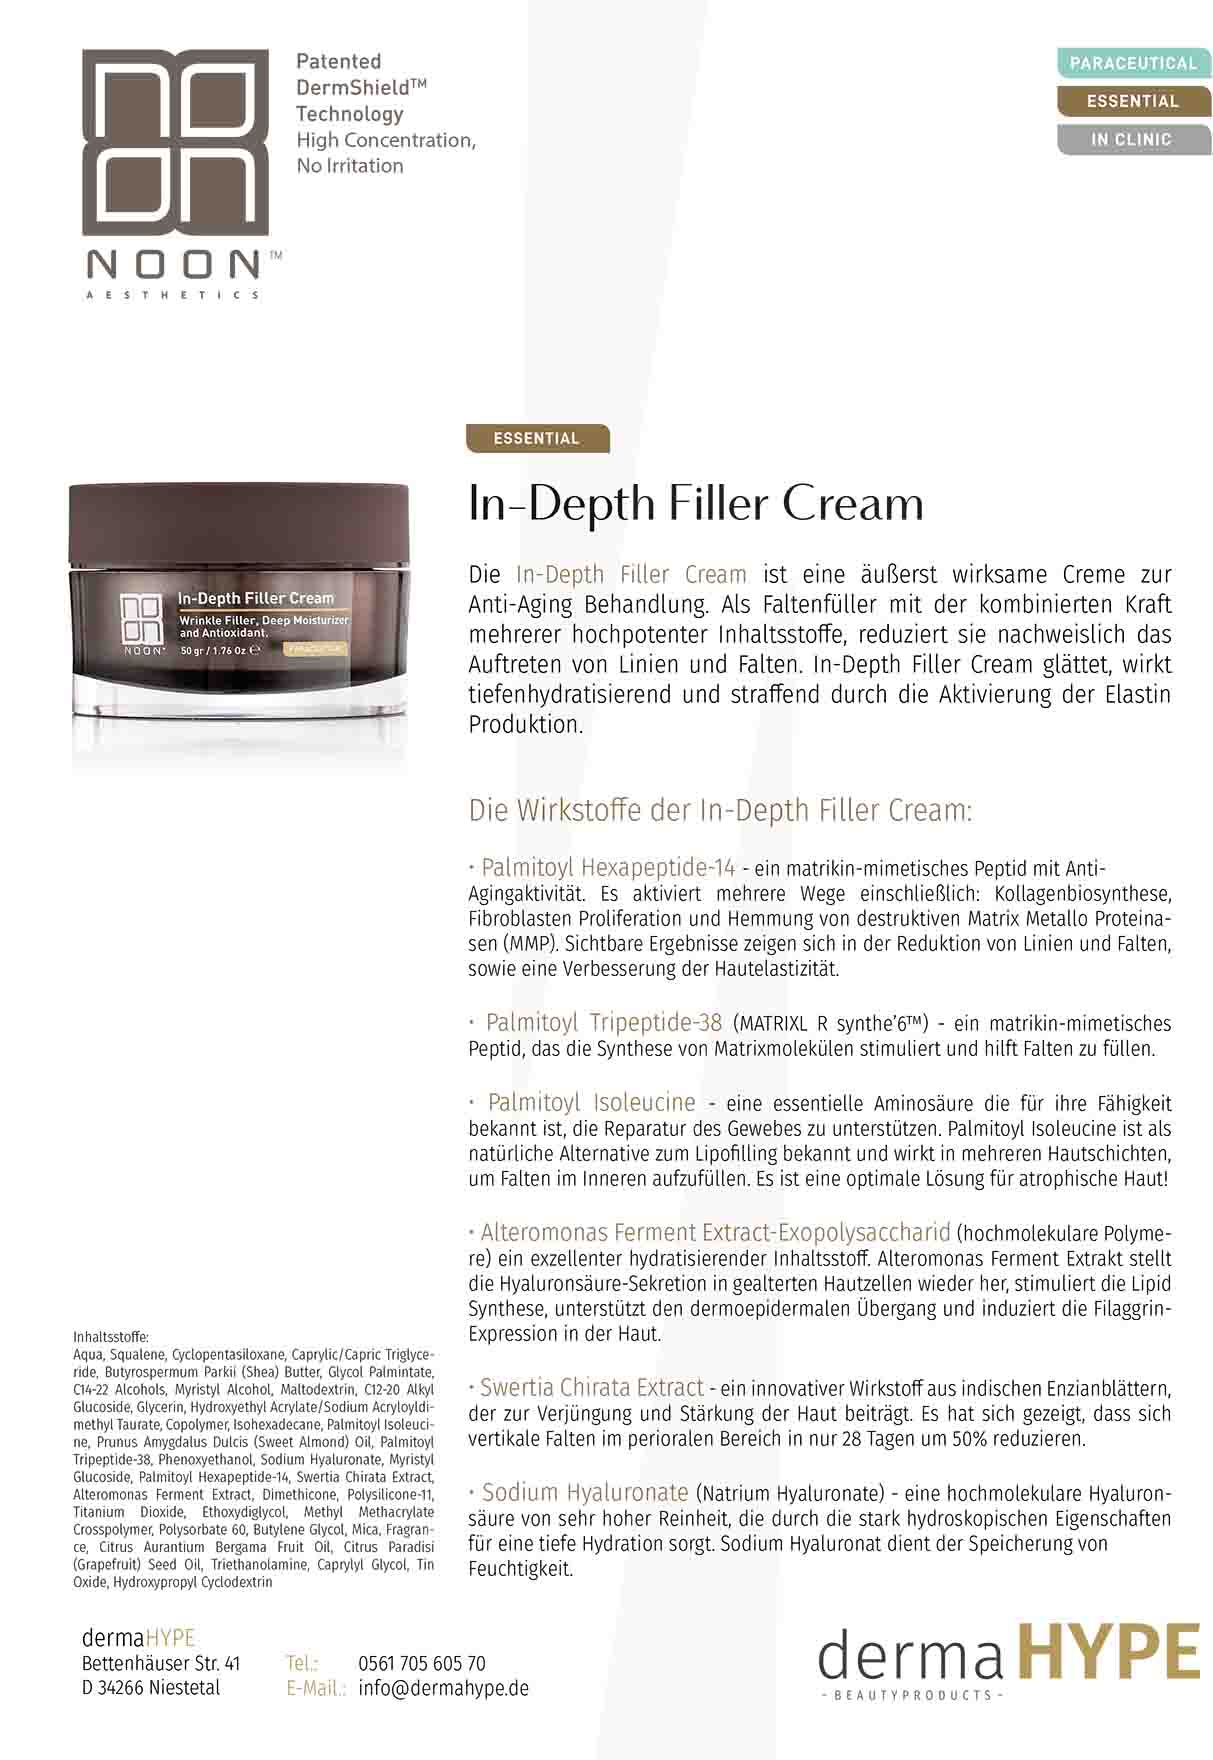 NOON In-Depth Filler Cream leaflet | Yuliskin Kosmetik Studio